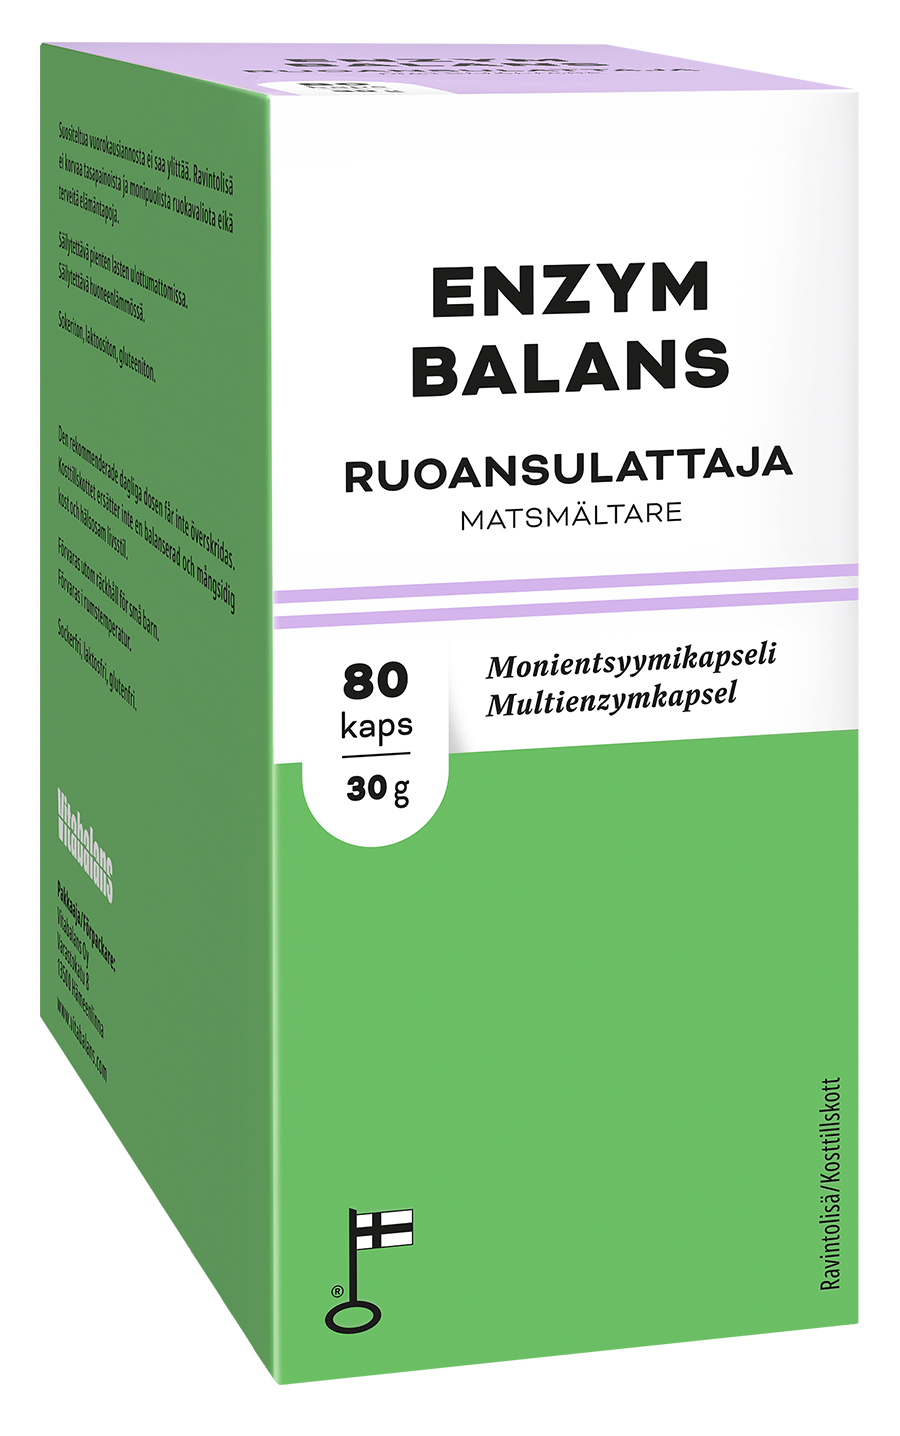 Enzym Balans - Monientsyymikapseli 80 kaps.